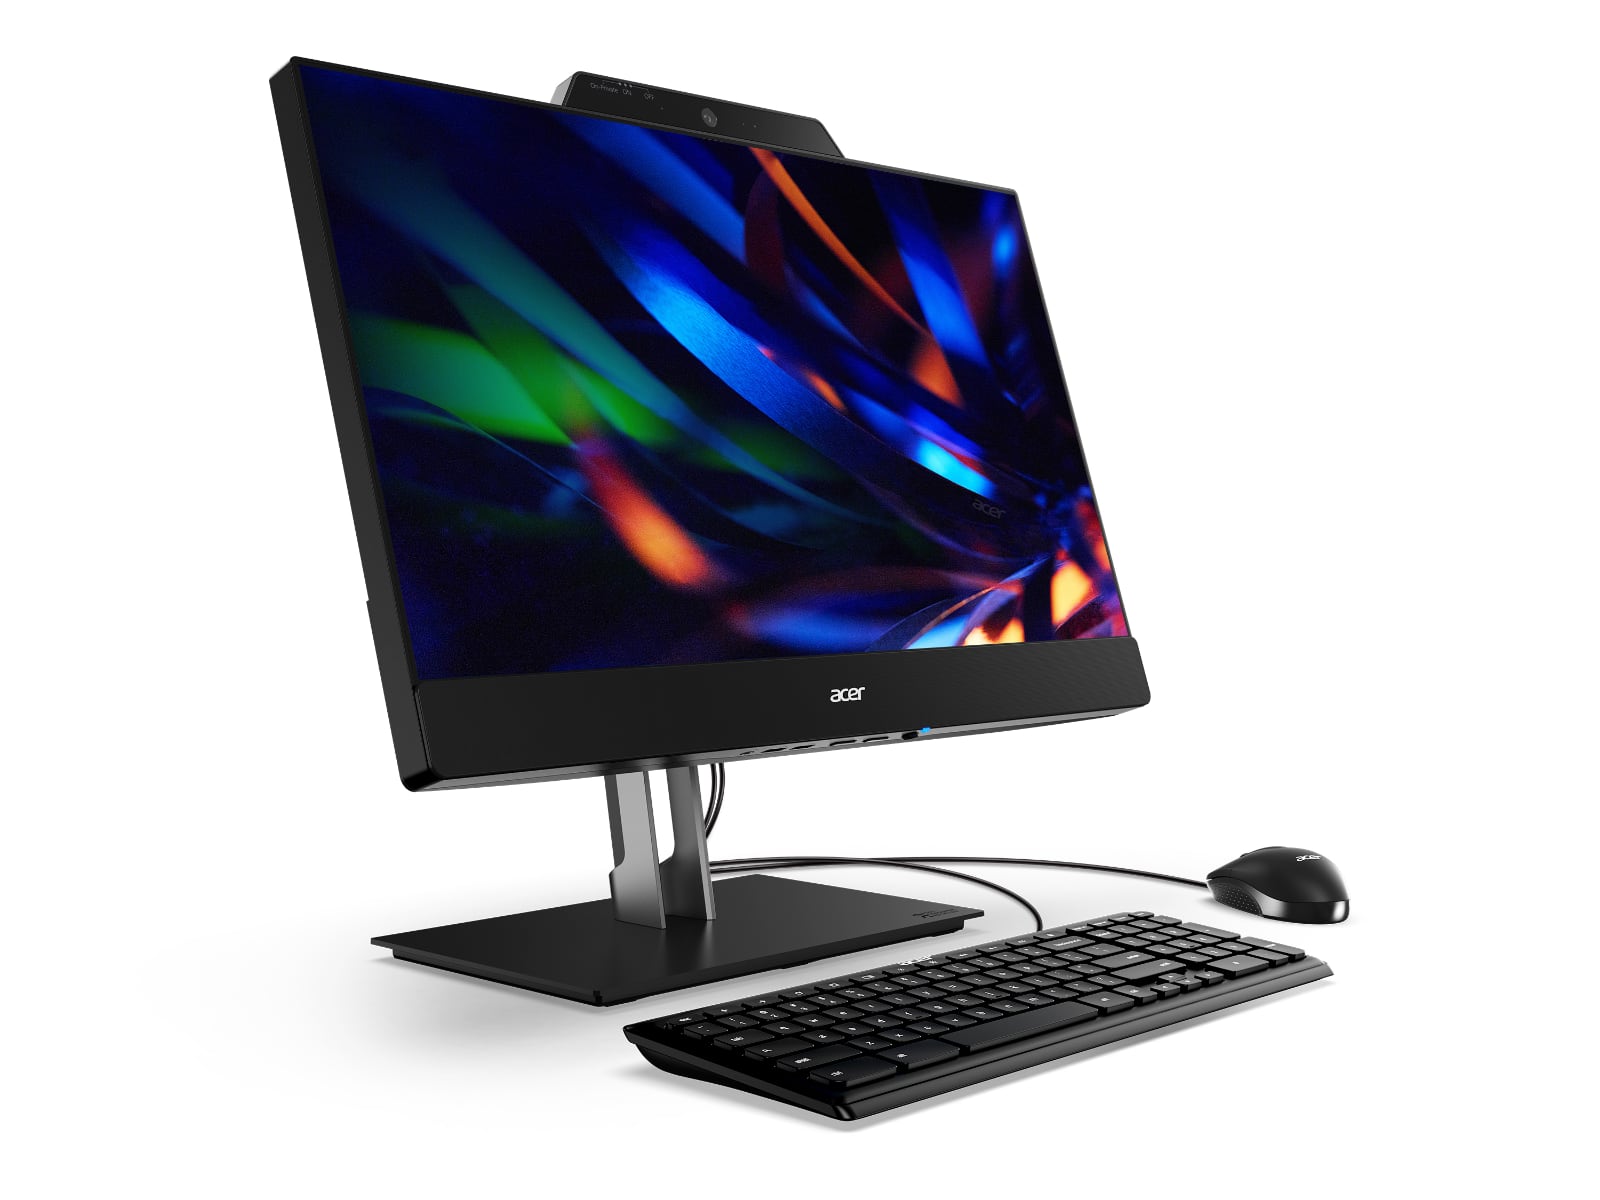 Acer aggiunge un monitor FHD 1080p da 24 pollici a tutti i nuovi Chromebox CXI5 e ha realizzato la soluzione Add-In-One 24 a 610 euro-2